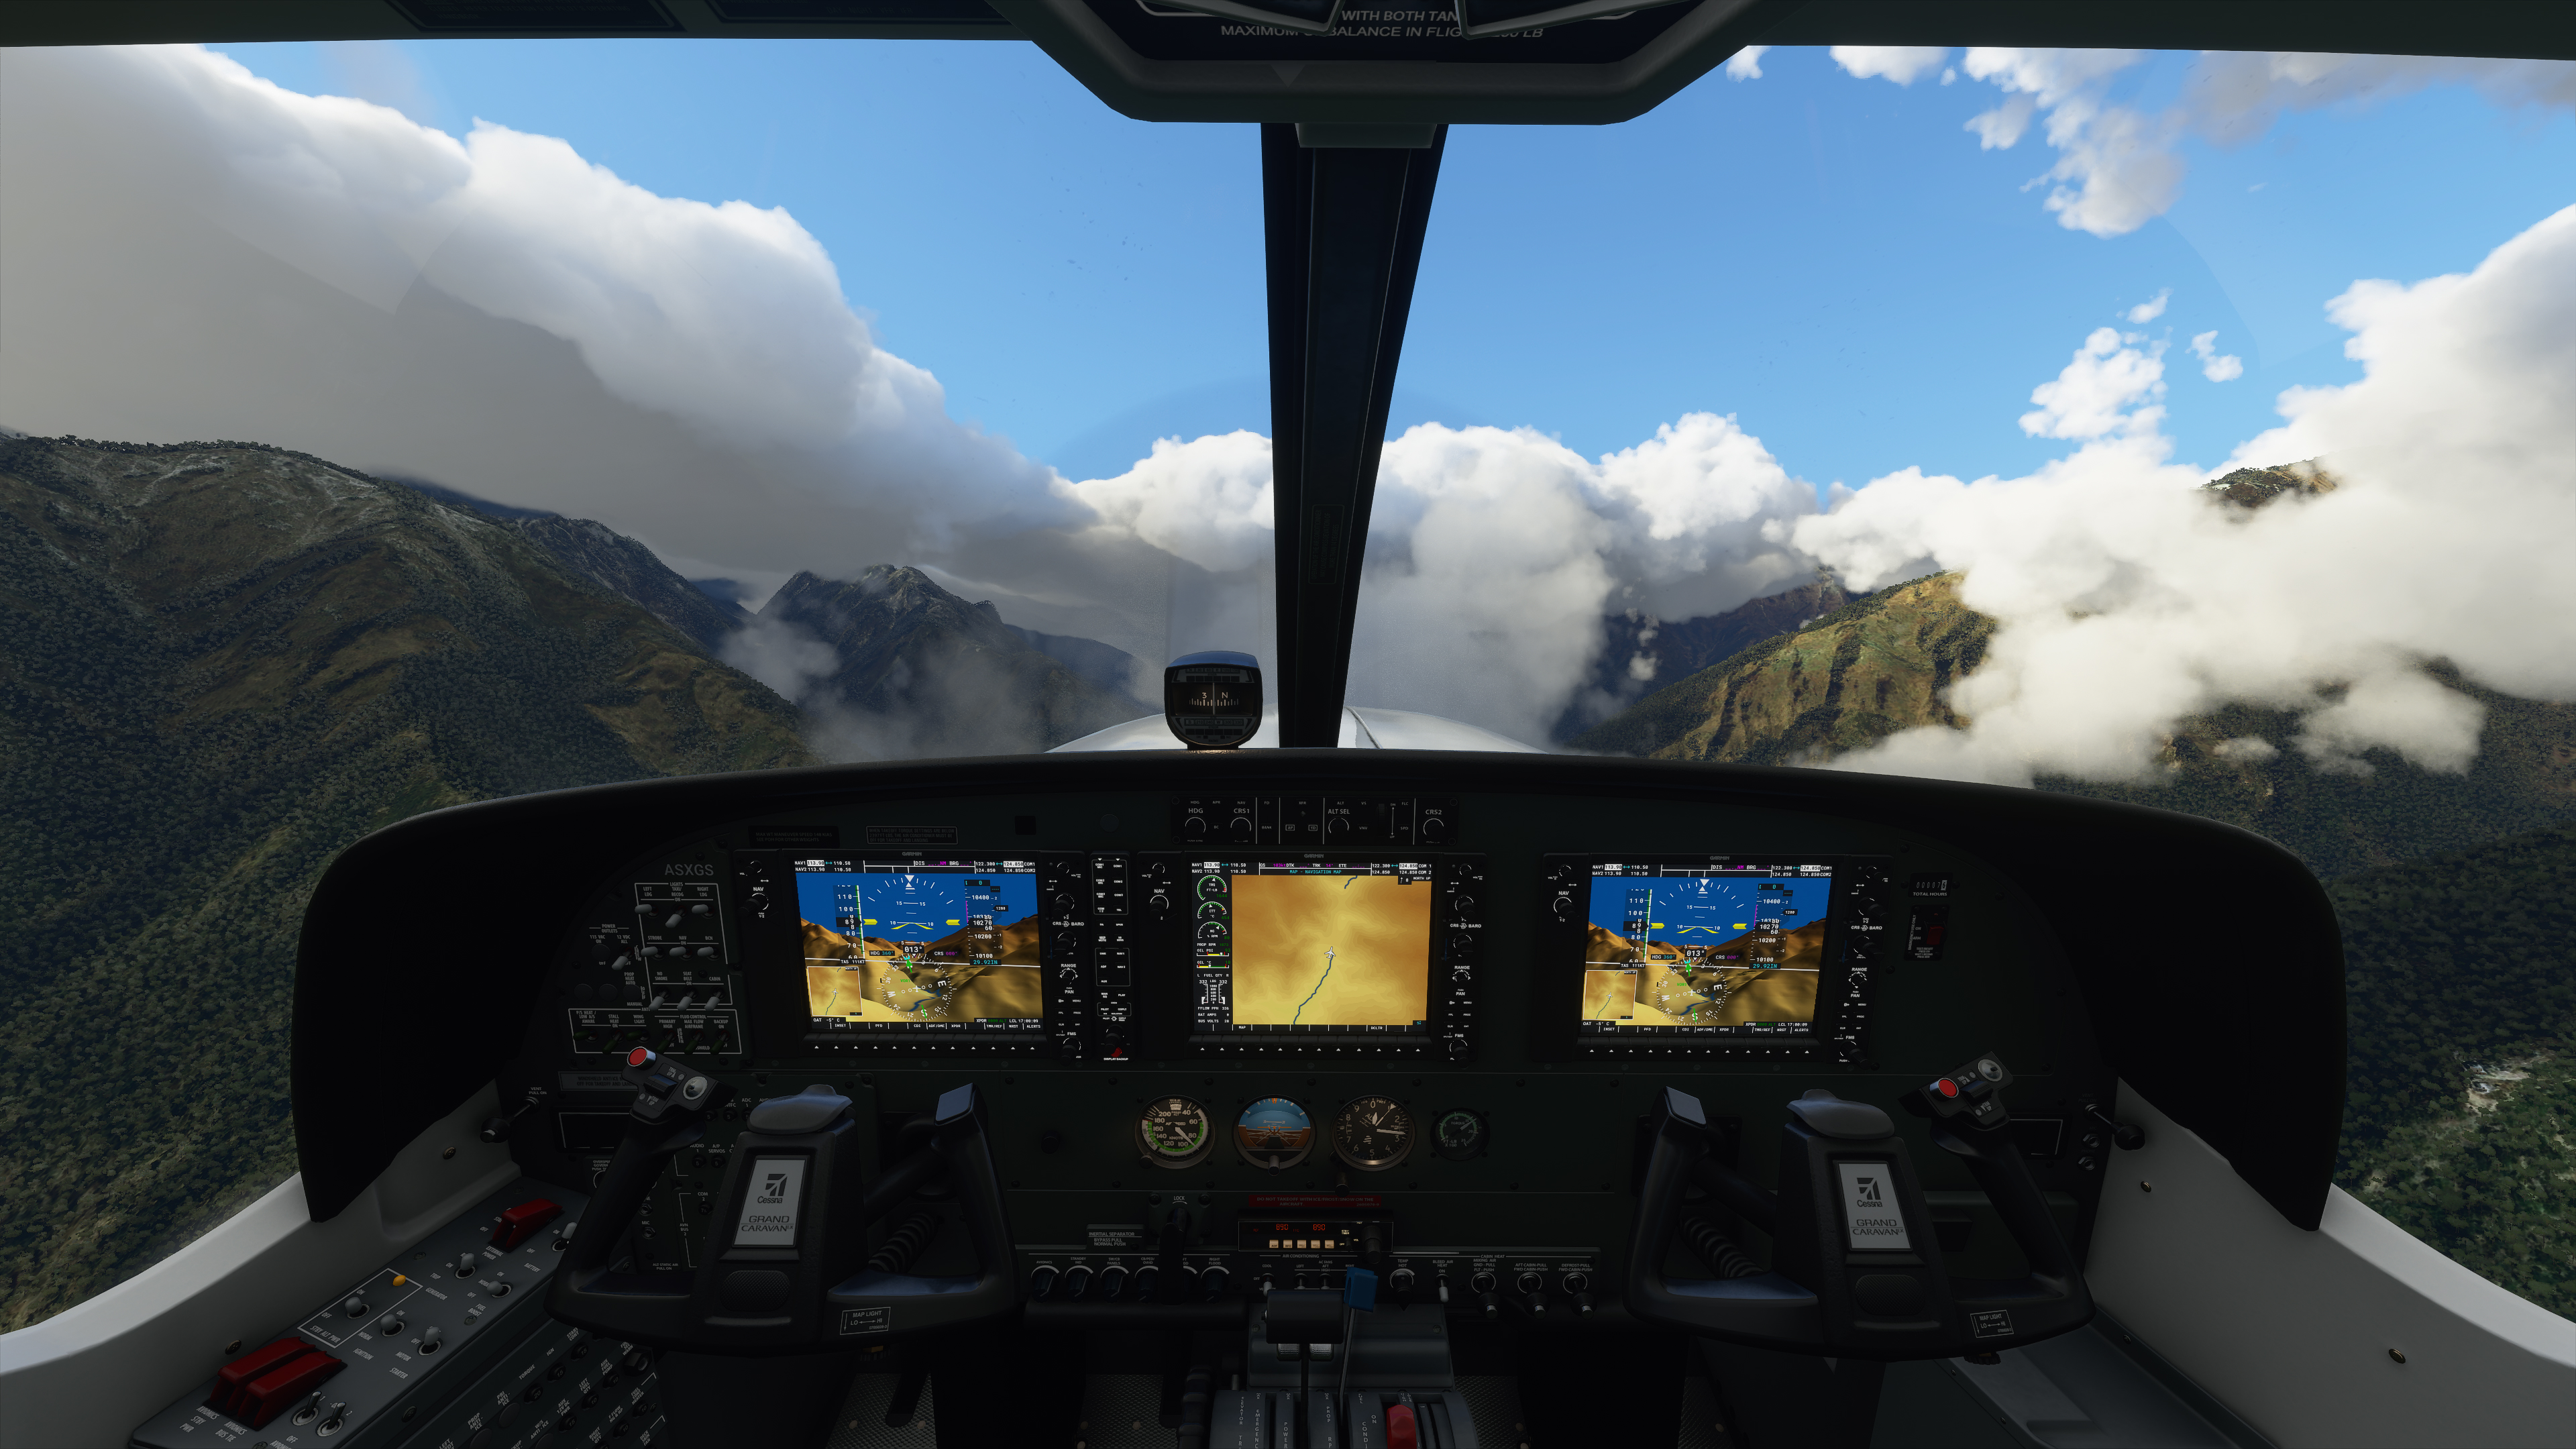 microsoft flight simulator for mac free download